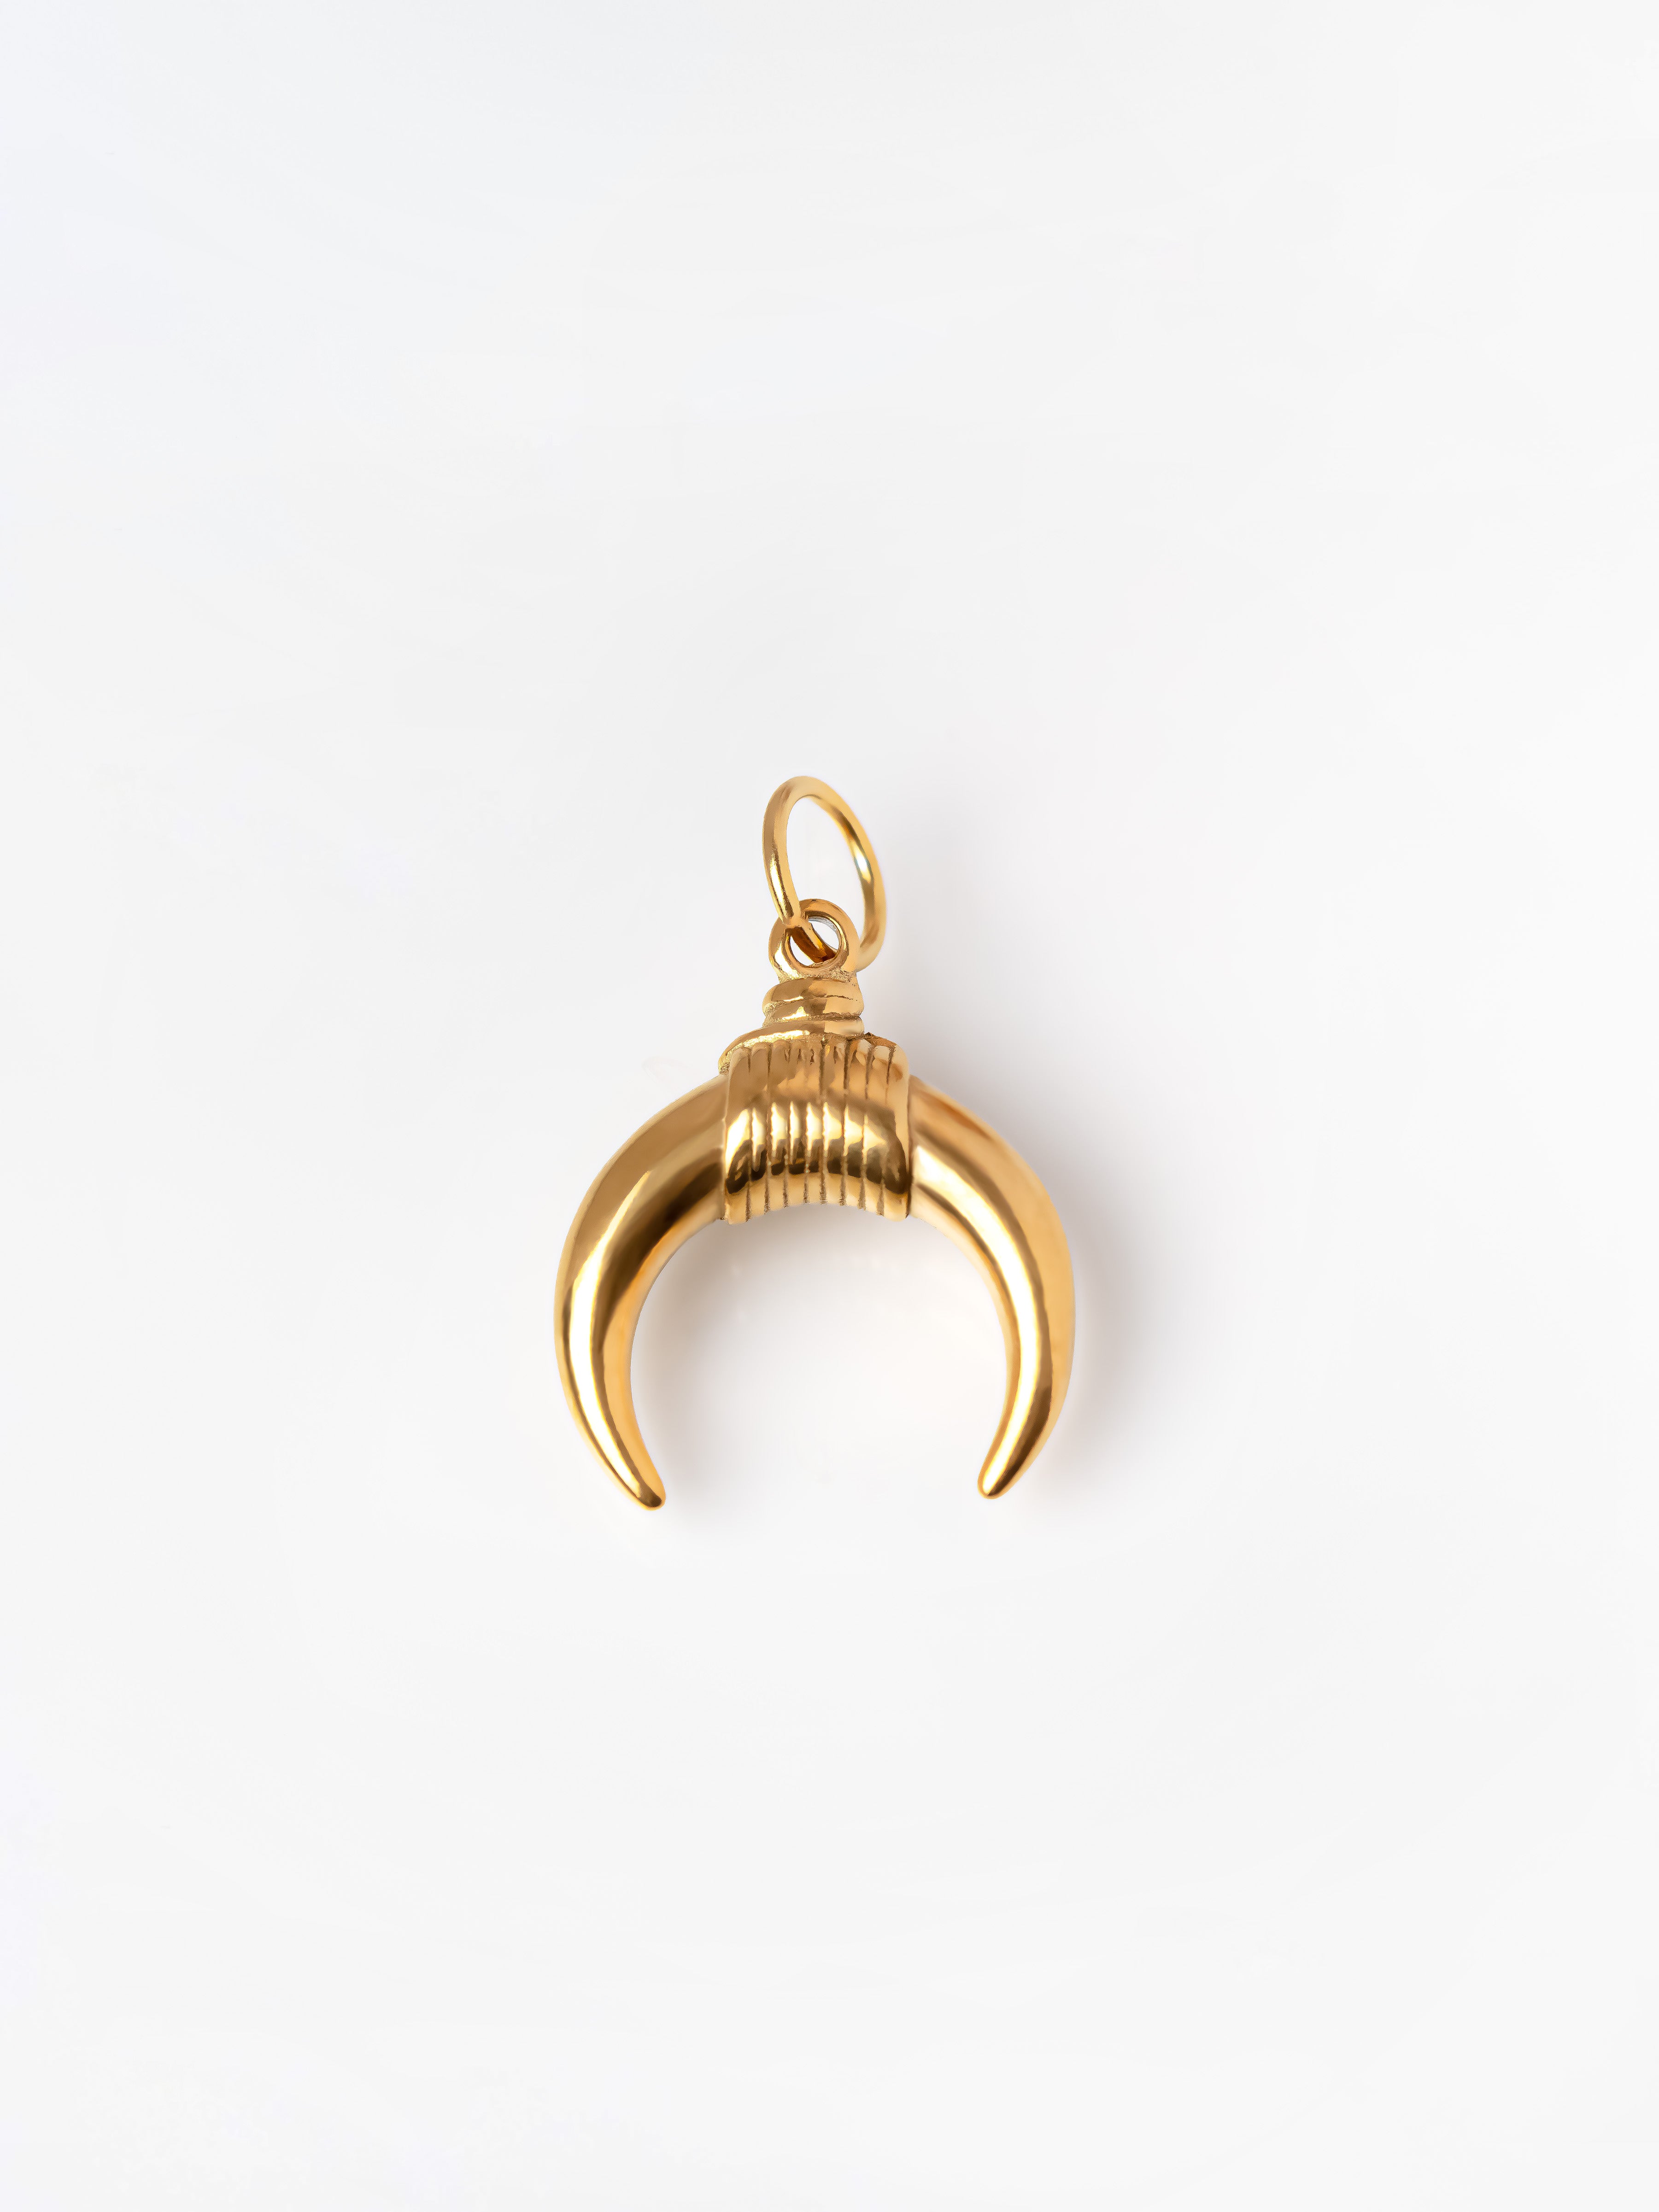 Gold Medium Bull Horn Pendant / Charm